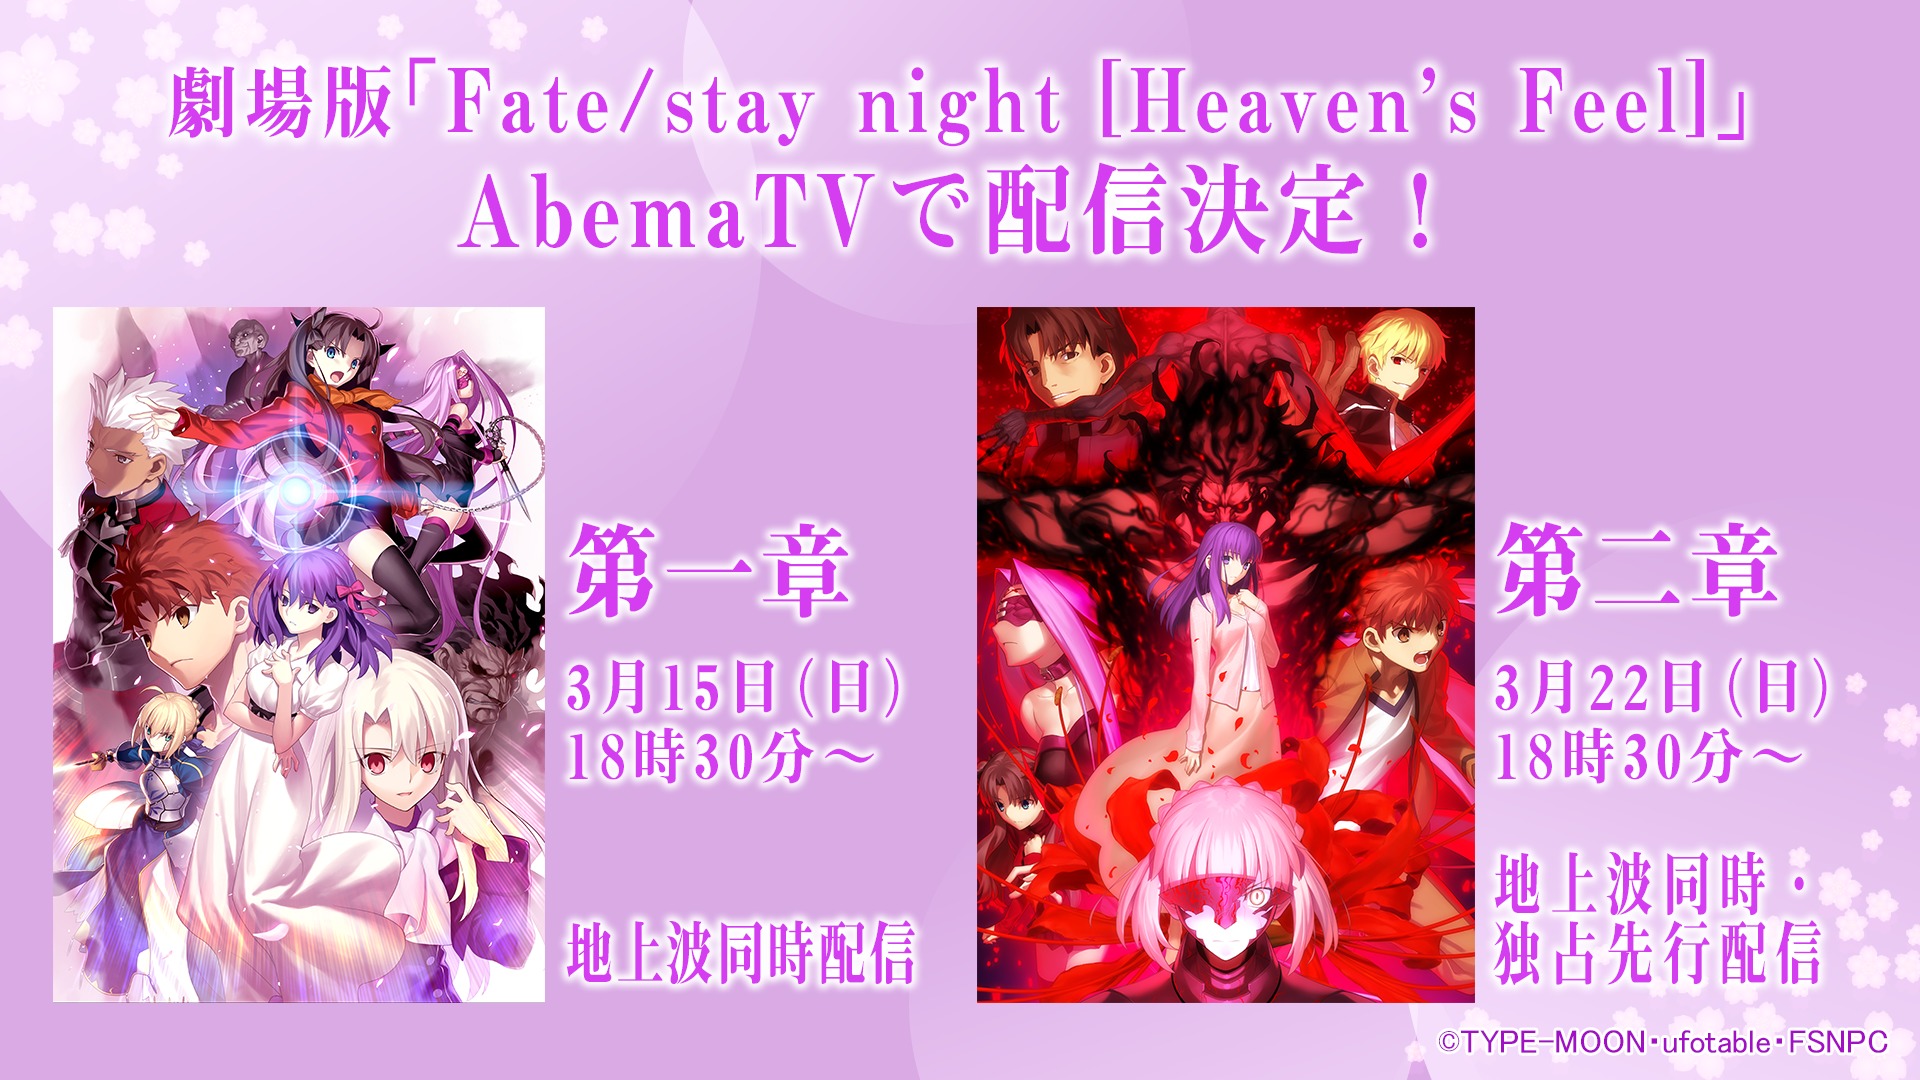 『劇場版「Fate/stay night [Heaven's Feel]」』  (c)TYPE-MOON・ufotable・FSNPC